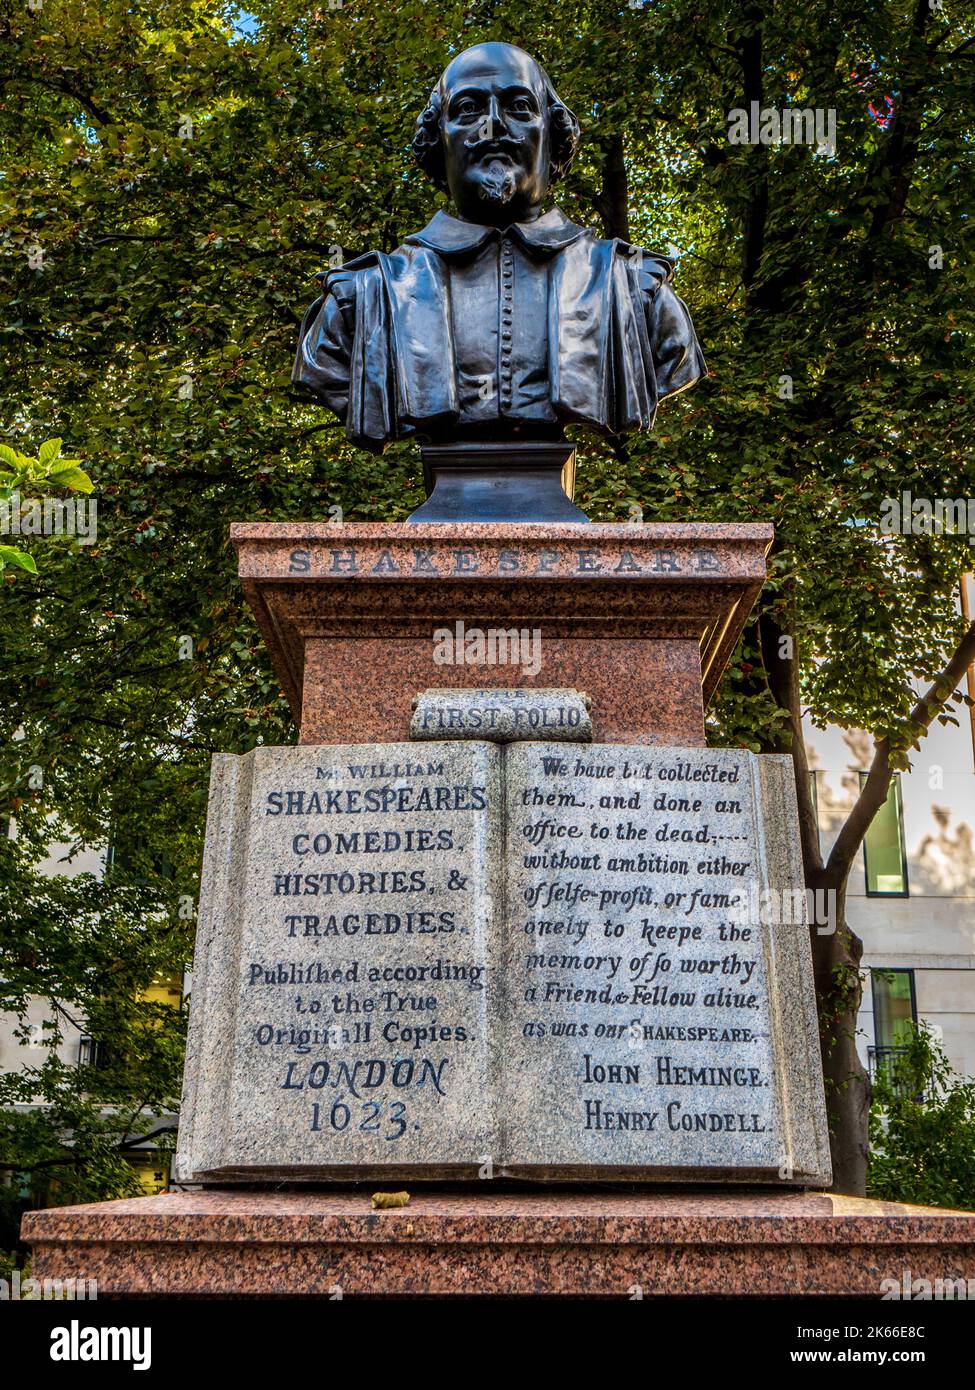 William Shakespeare Büste in der Aldermanbury Garden Love Lane in der City of London an einem Denkmal für John Hemains und Henry Condell, die ersten Folio-Herausgeber. Stockfoto